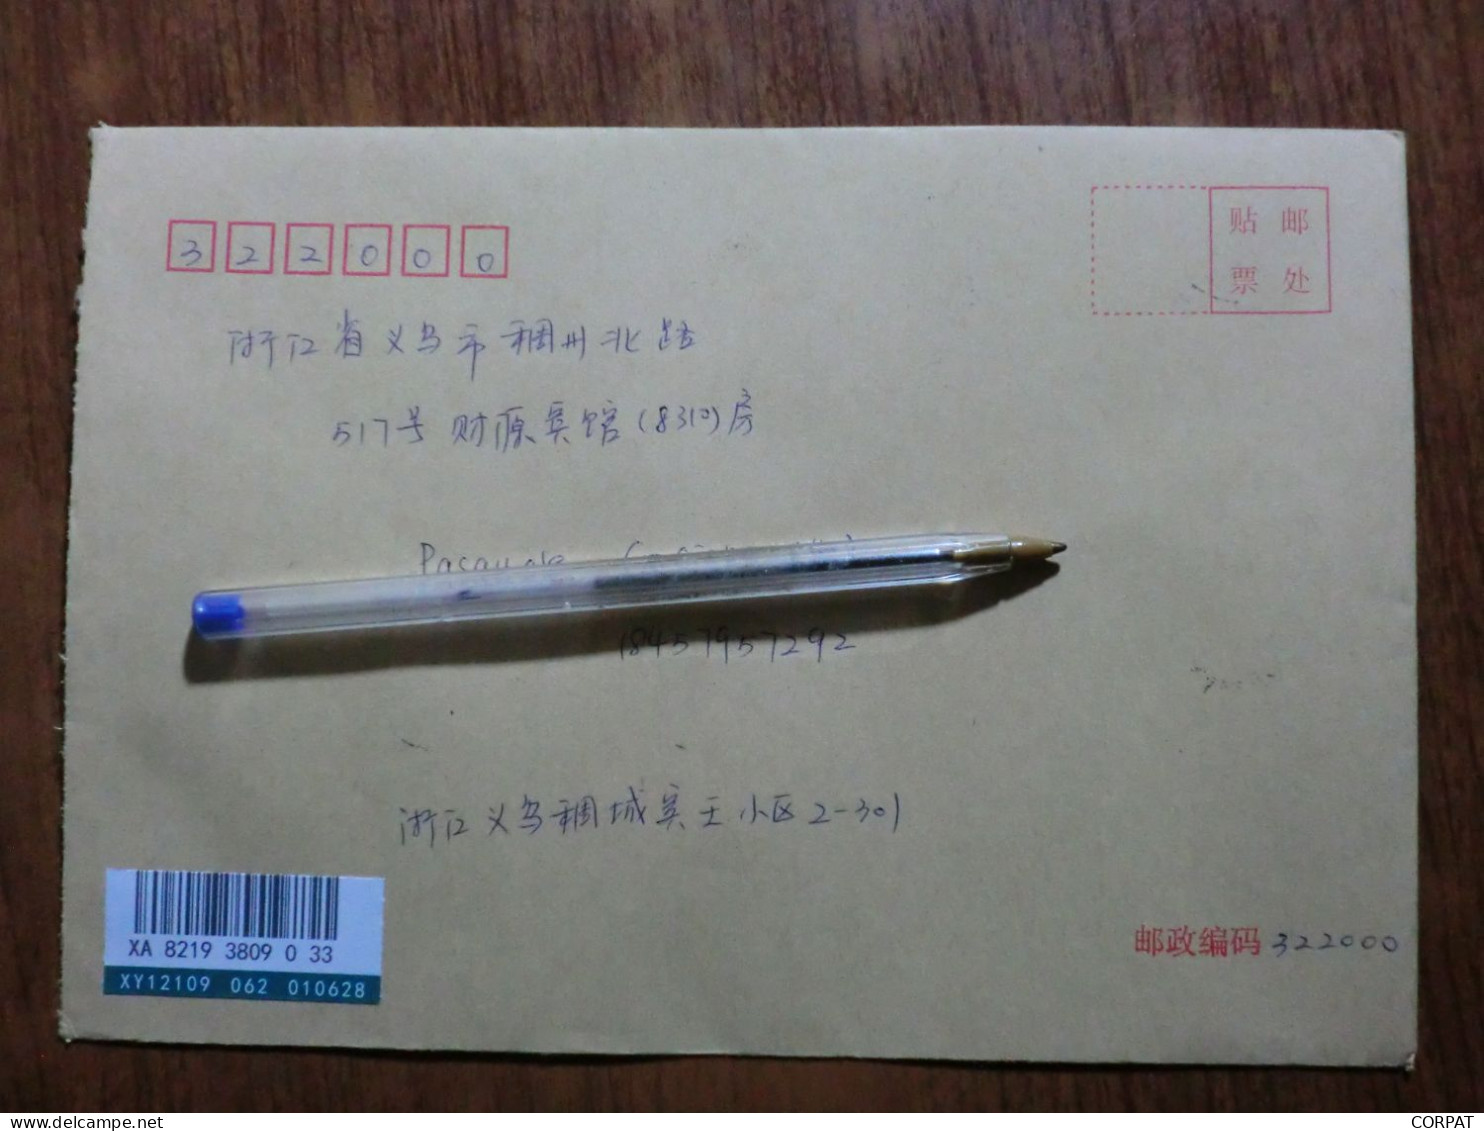 China.Rare Full Set  On Registered Envelope - Brieven En Documenten